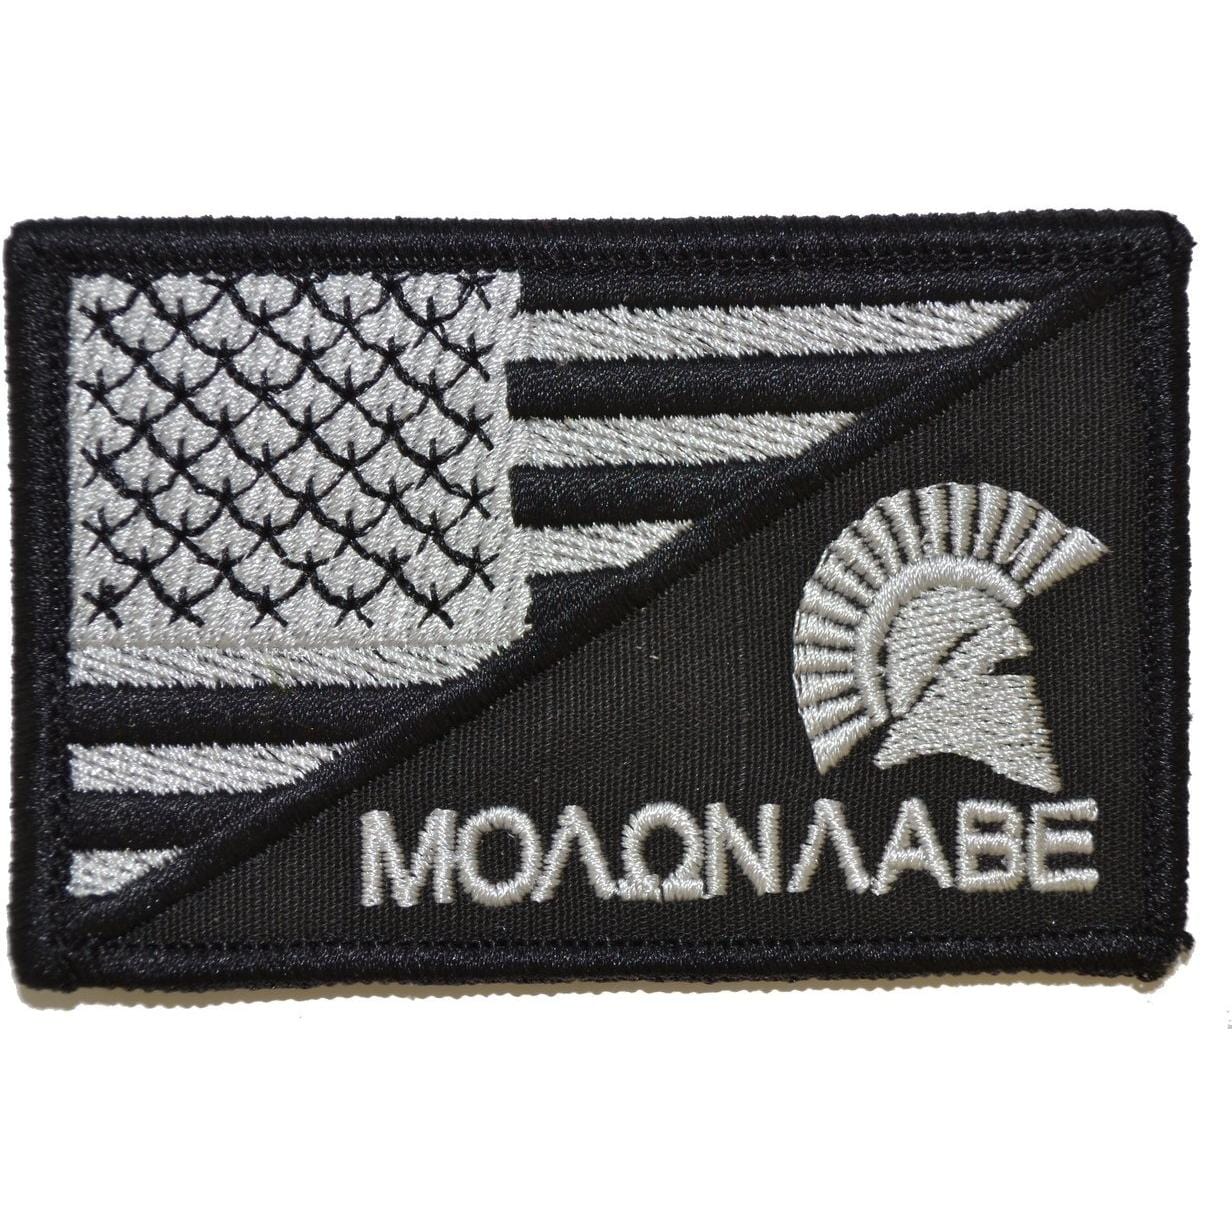 Tactical Gear Junkie Patches Black Molon Labe Spartan Helmet USA Flag - 2.25x3.5 Patch